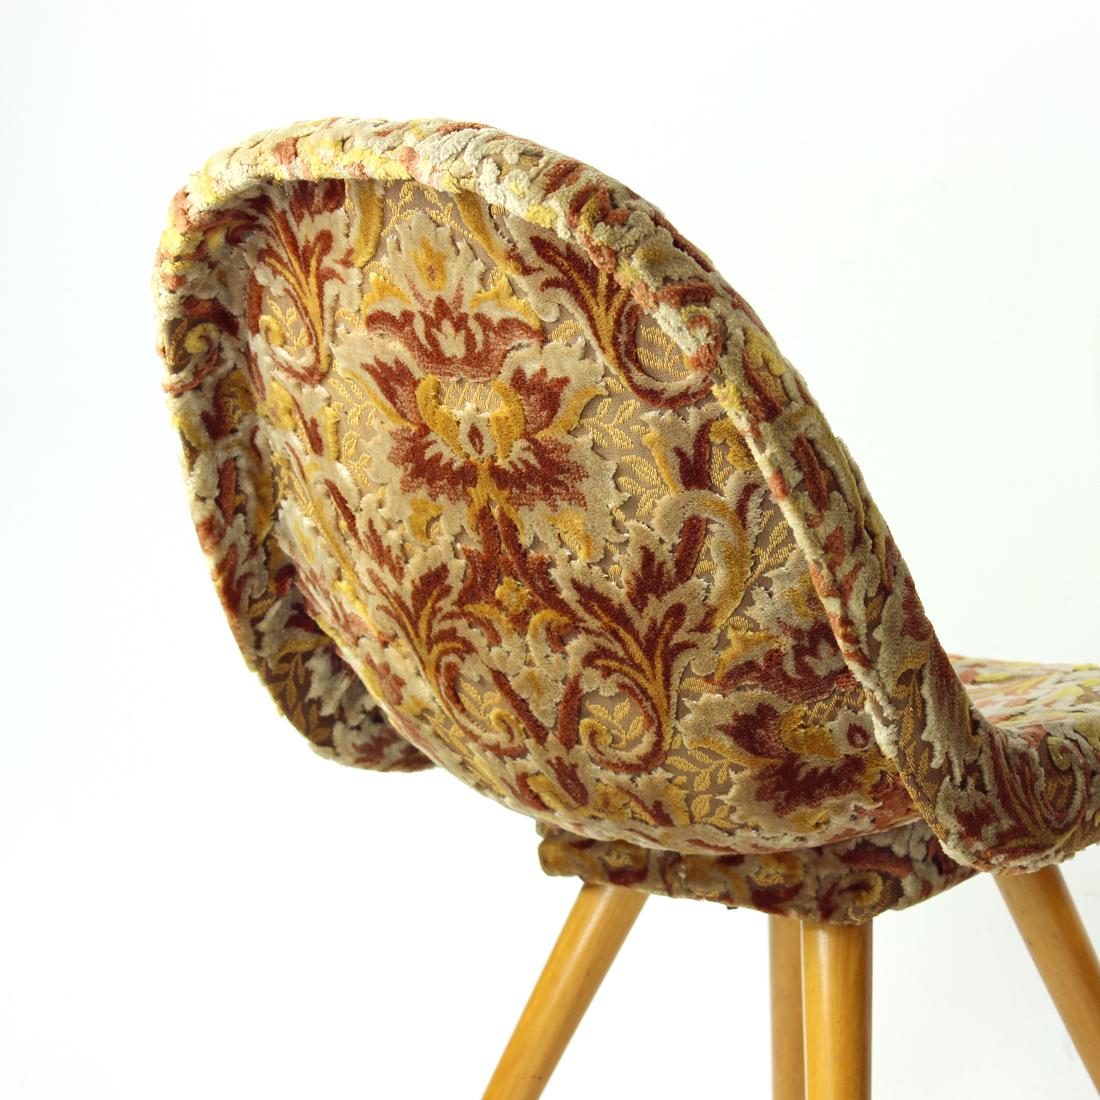 Velvet Pair Of Midcentury Shell Chairs By Miroslav Navratil, Czechoslovakia 1960s For Sale